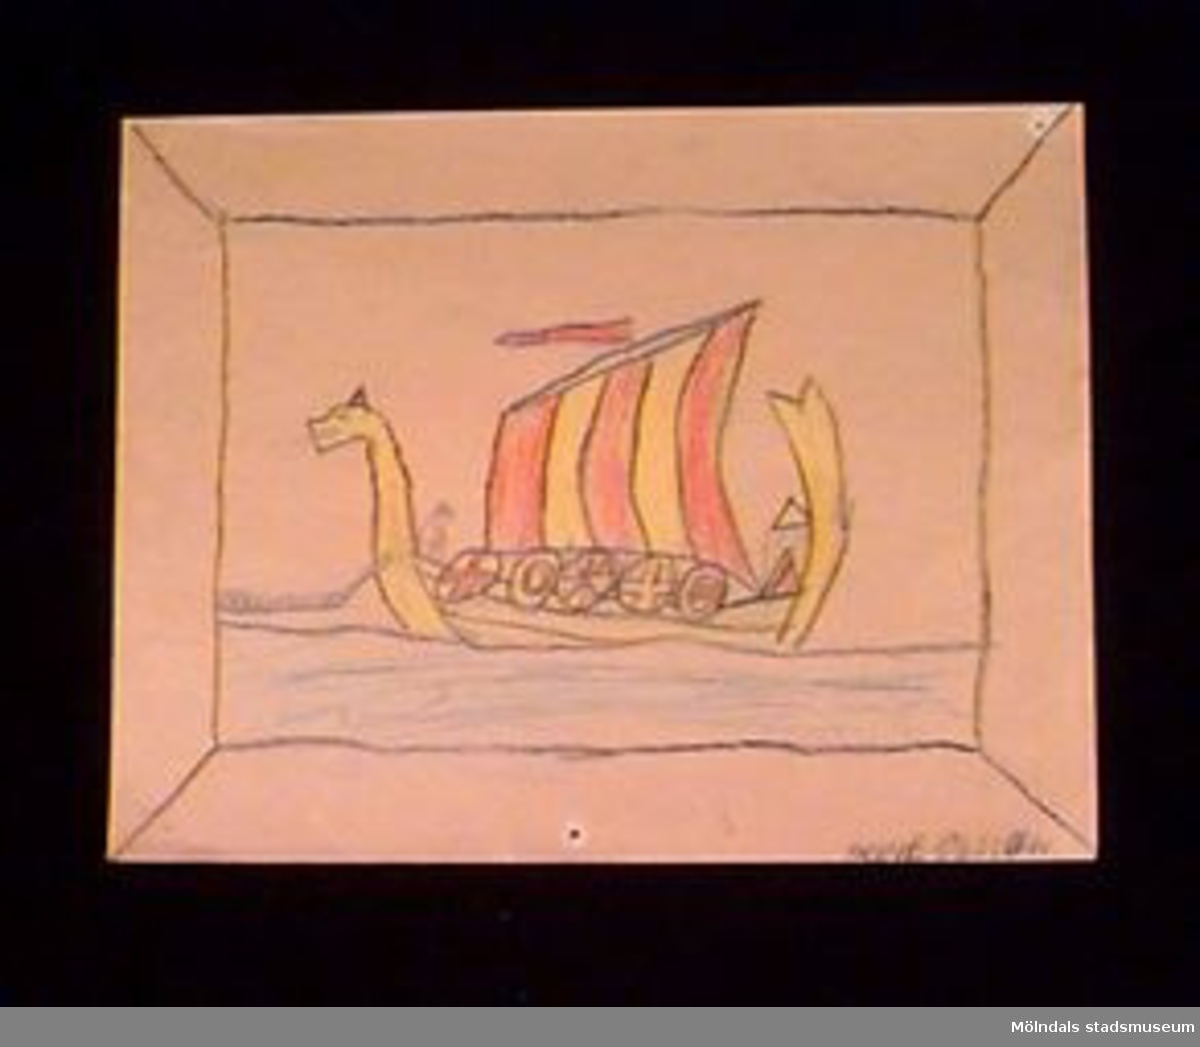 En teckning föreställande ett drakskepp/vikingafartyg. Utfört i blyerts och krita. Givaren gick hela sin skoltid i Toltorpsskolan.